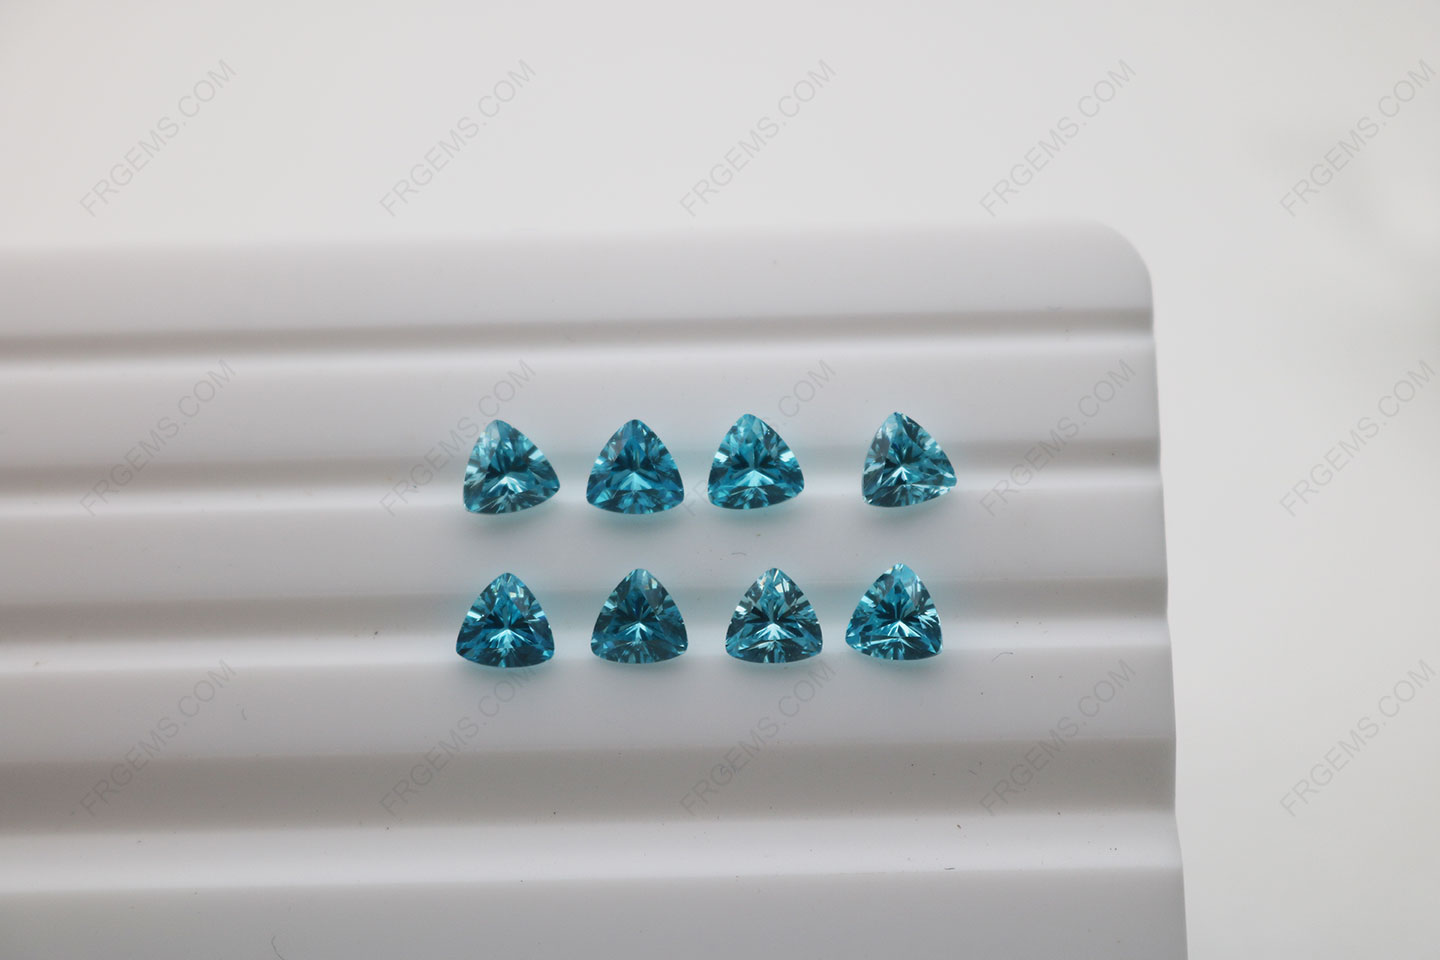 Cubic_Zirconia_Aquamarine_Trillion_Shape_Diamond_faceted_cut_5x5mm_stones_IMG_4893